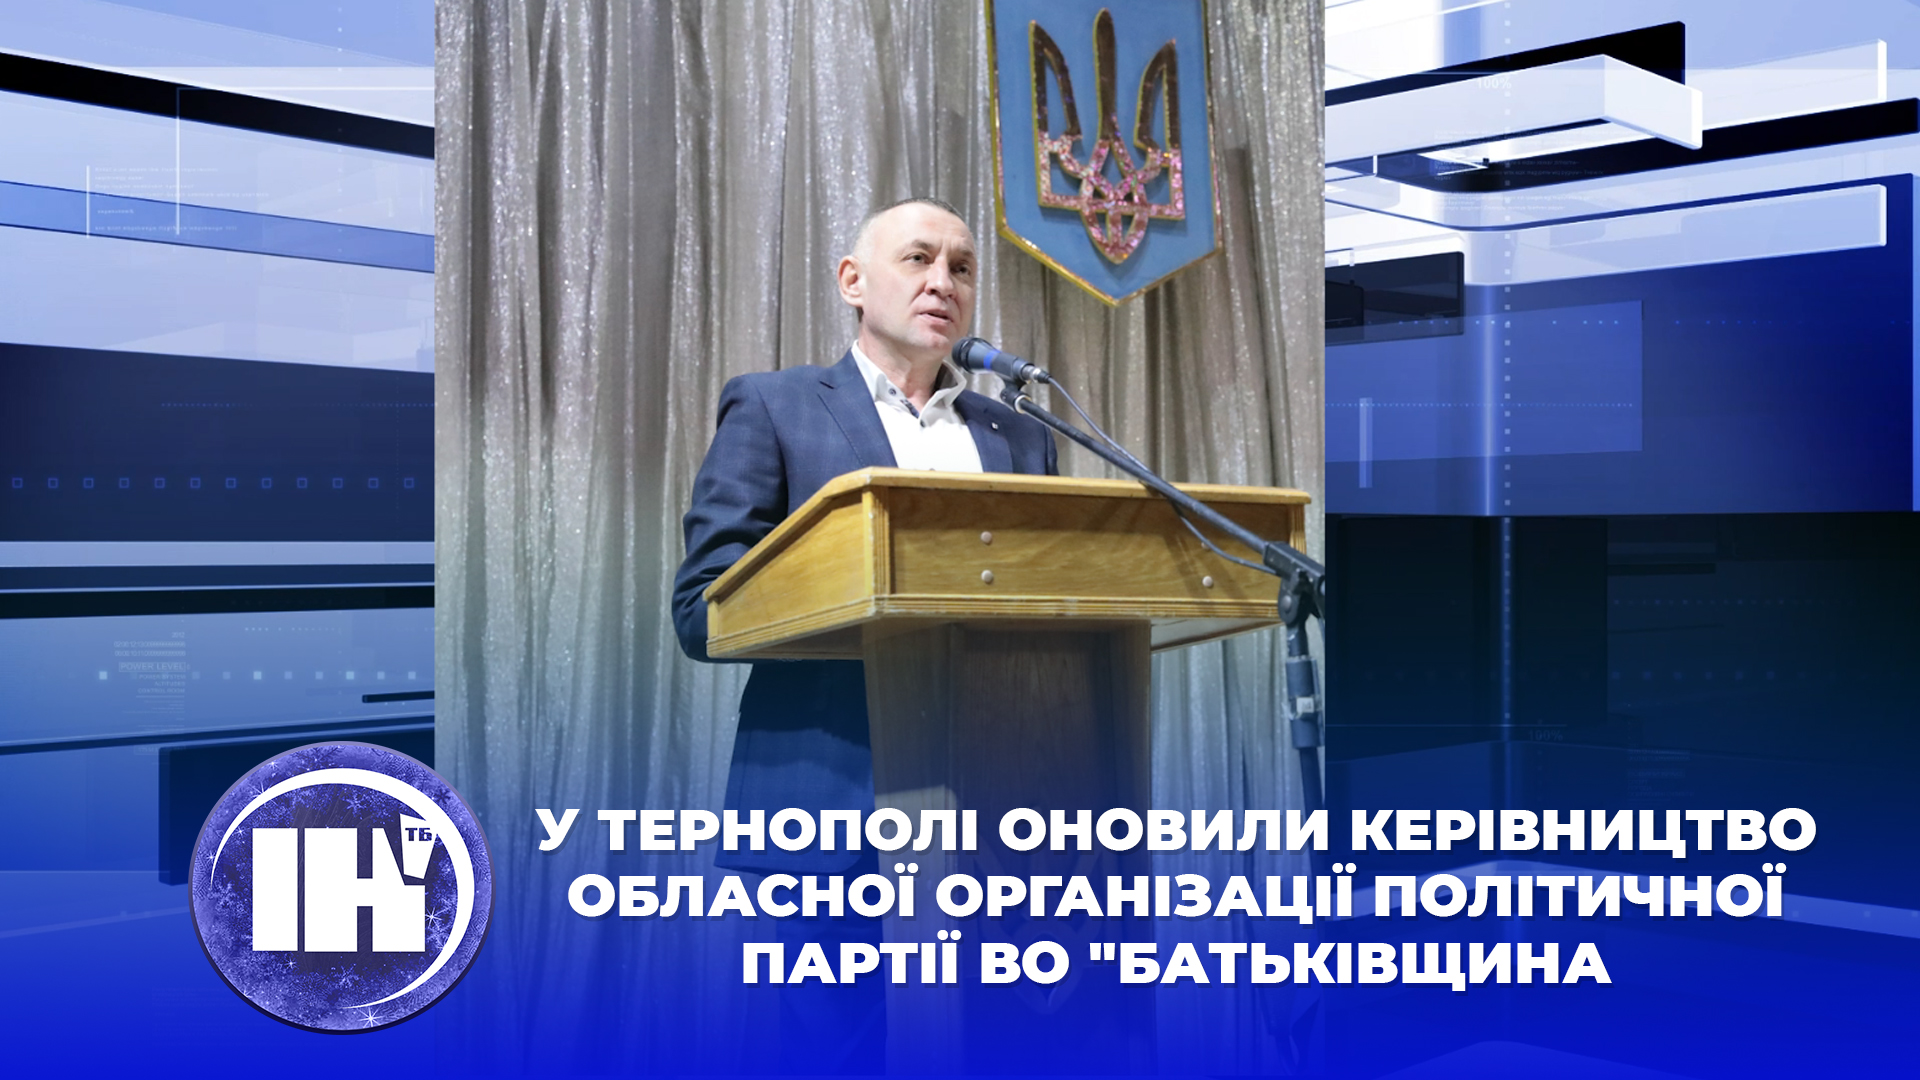 У Тернополі оновили керівництво обласної організації політичної партії ВО “Батьківщина”